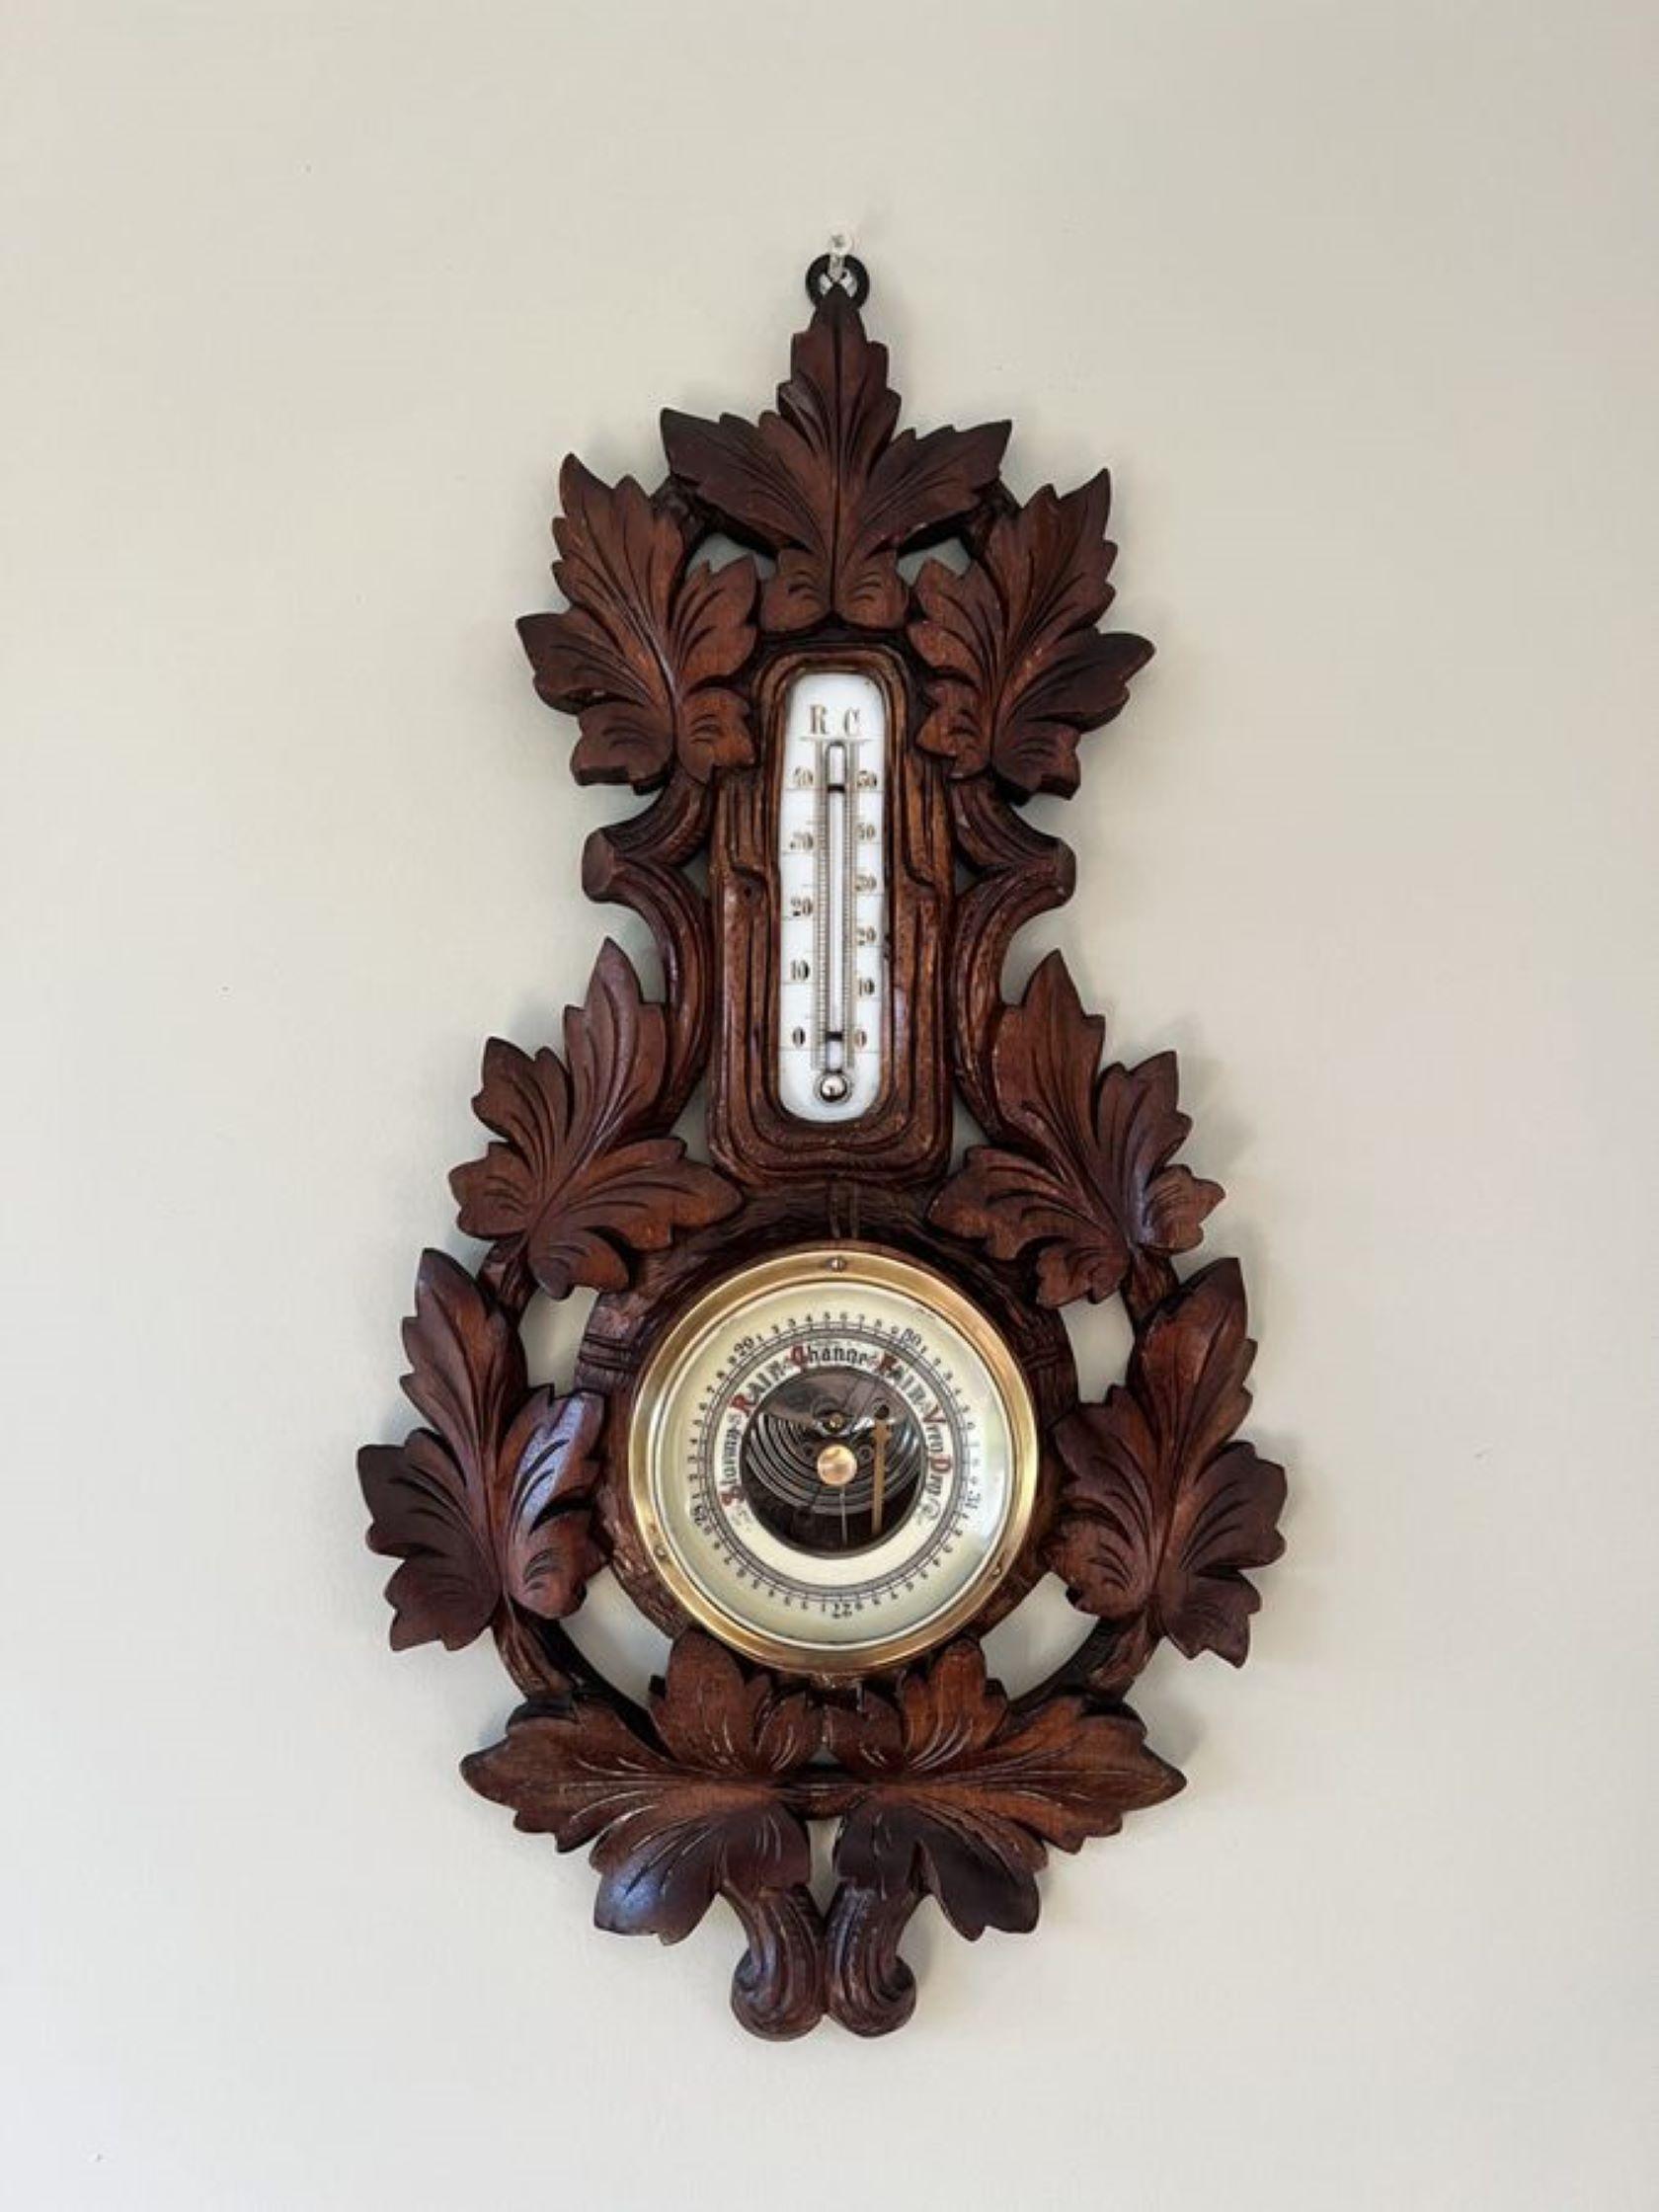 Atemberaubende Qualität antiken viktorianischen Schwarzwald Aneroid-Barometer mit einer fantastischen Qualität antiken viktorianischen Schwarzwald Barometer mit einer Qualität geschnitzt Nussbaum Fall mit Blättern rund um das Barometer mit einem